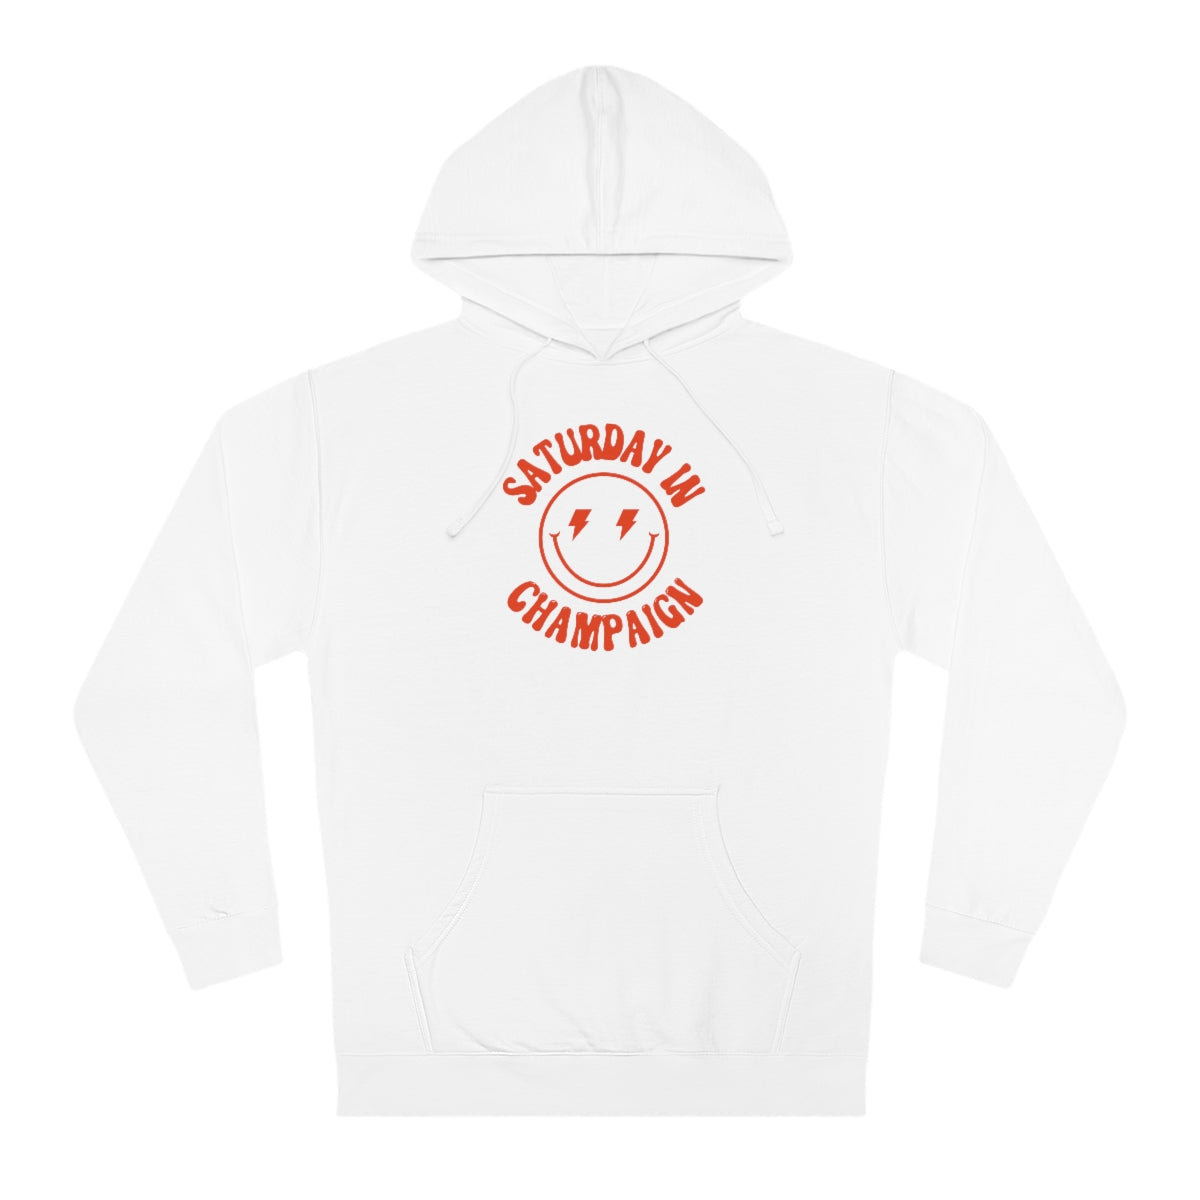 Smiley Champaign Hooded Sweatshirt - GG - ITC